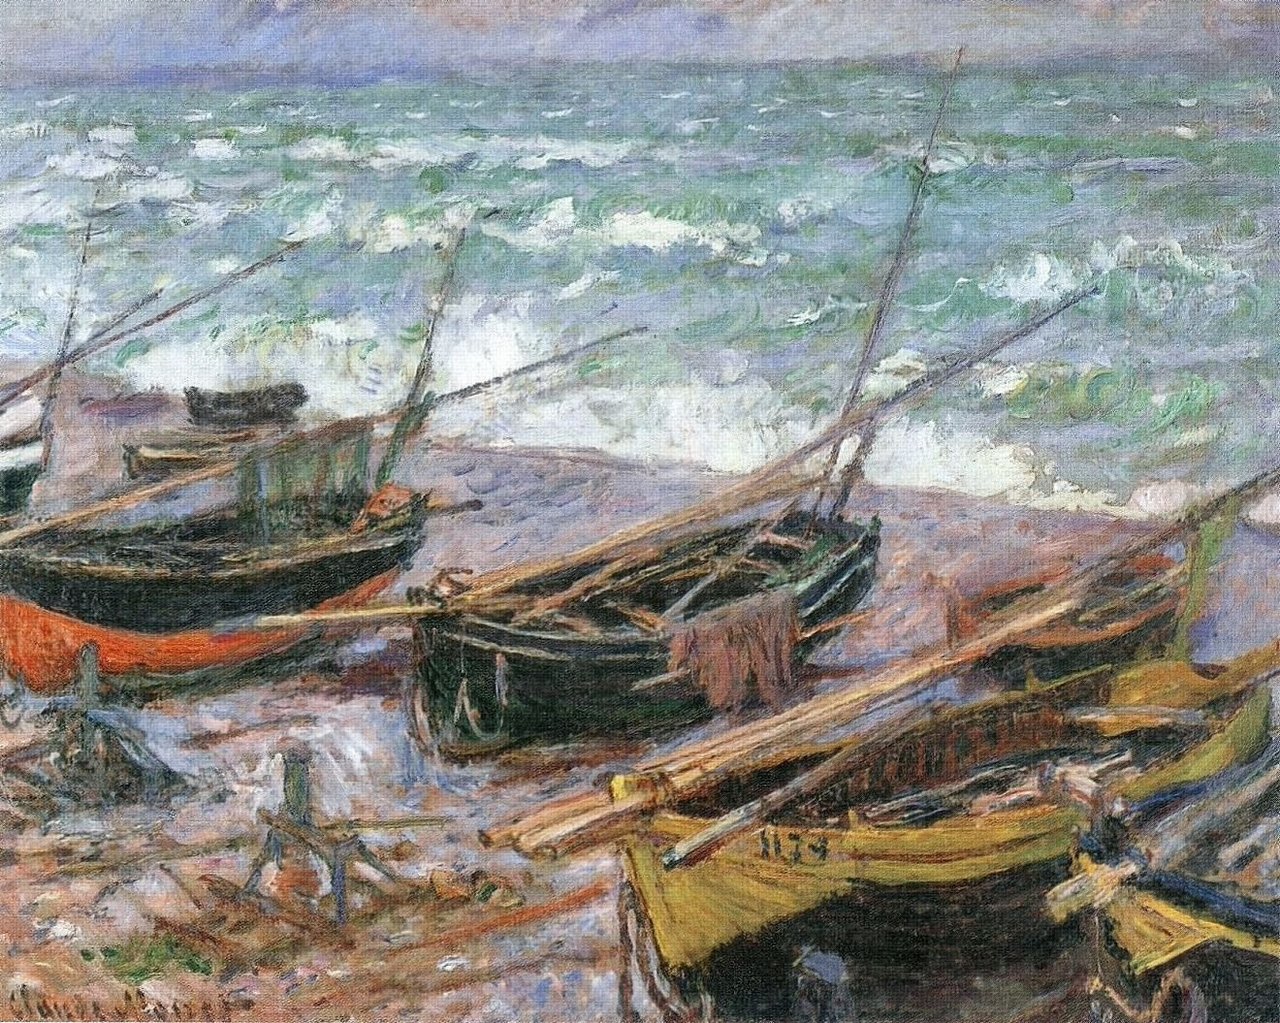 سه قایقِ ماهیگیری by Claude Monet - 1886 - 73 x 92.5 cm 